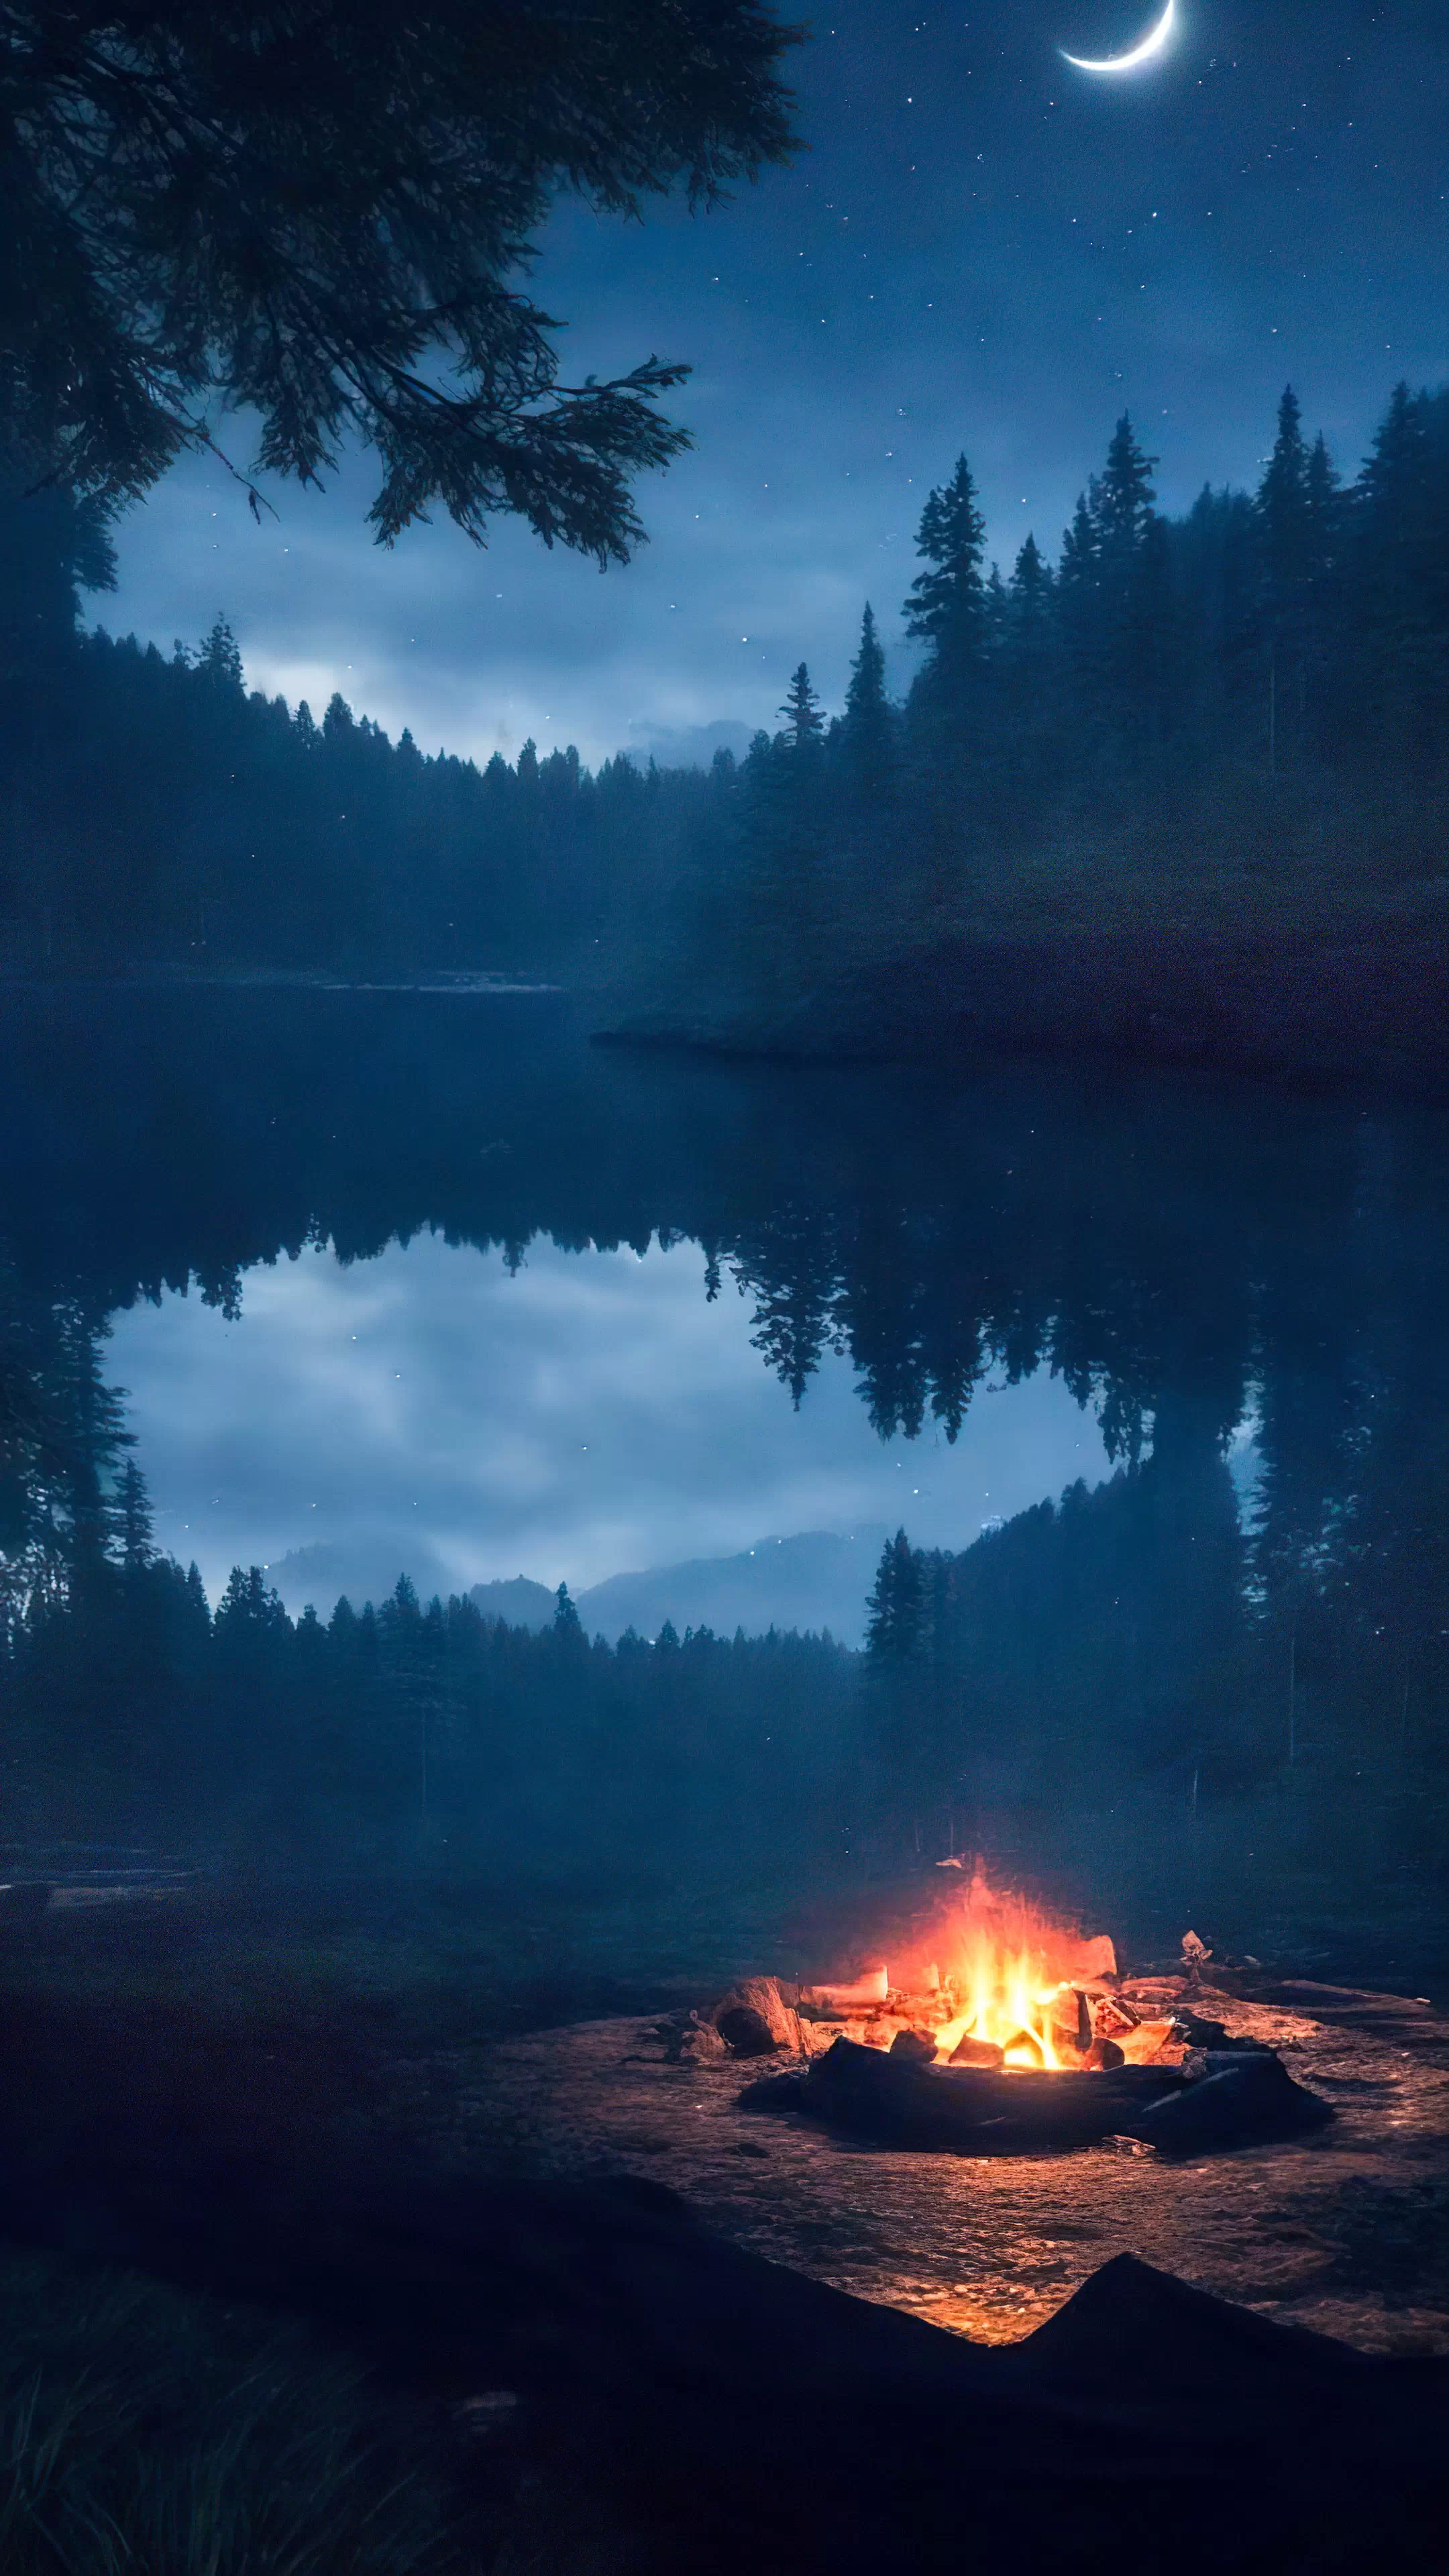 Goûtez à l'aventure avec notre fond d'écran de nature en HD, présentant un campement avec un feu de camp chaleureux au cœur d'une forêt sombre, et laissez votre écran vous transporter vers une nuit sous les étoiles.